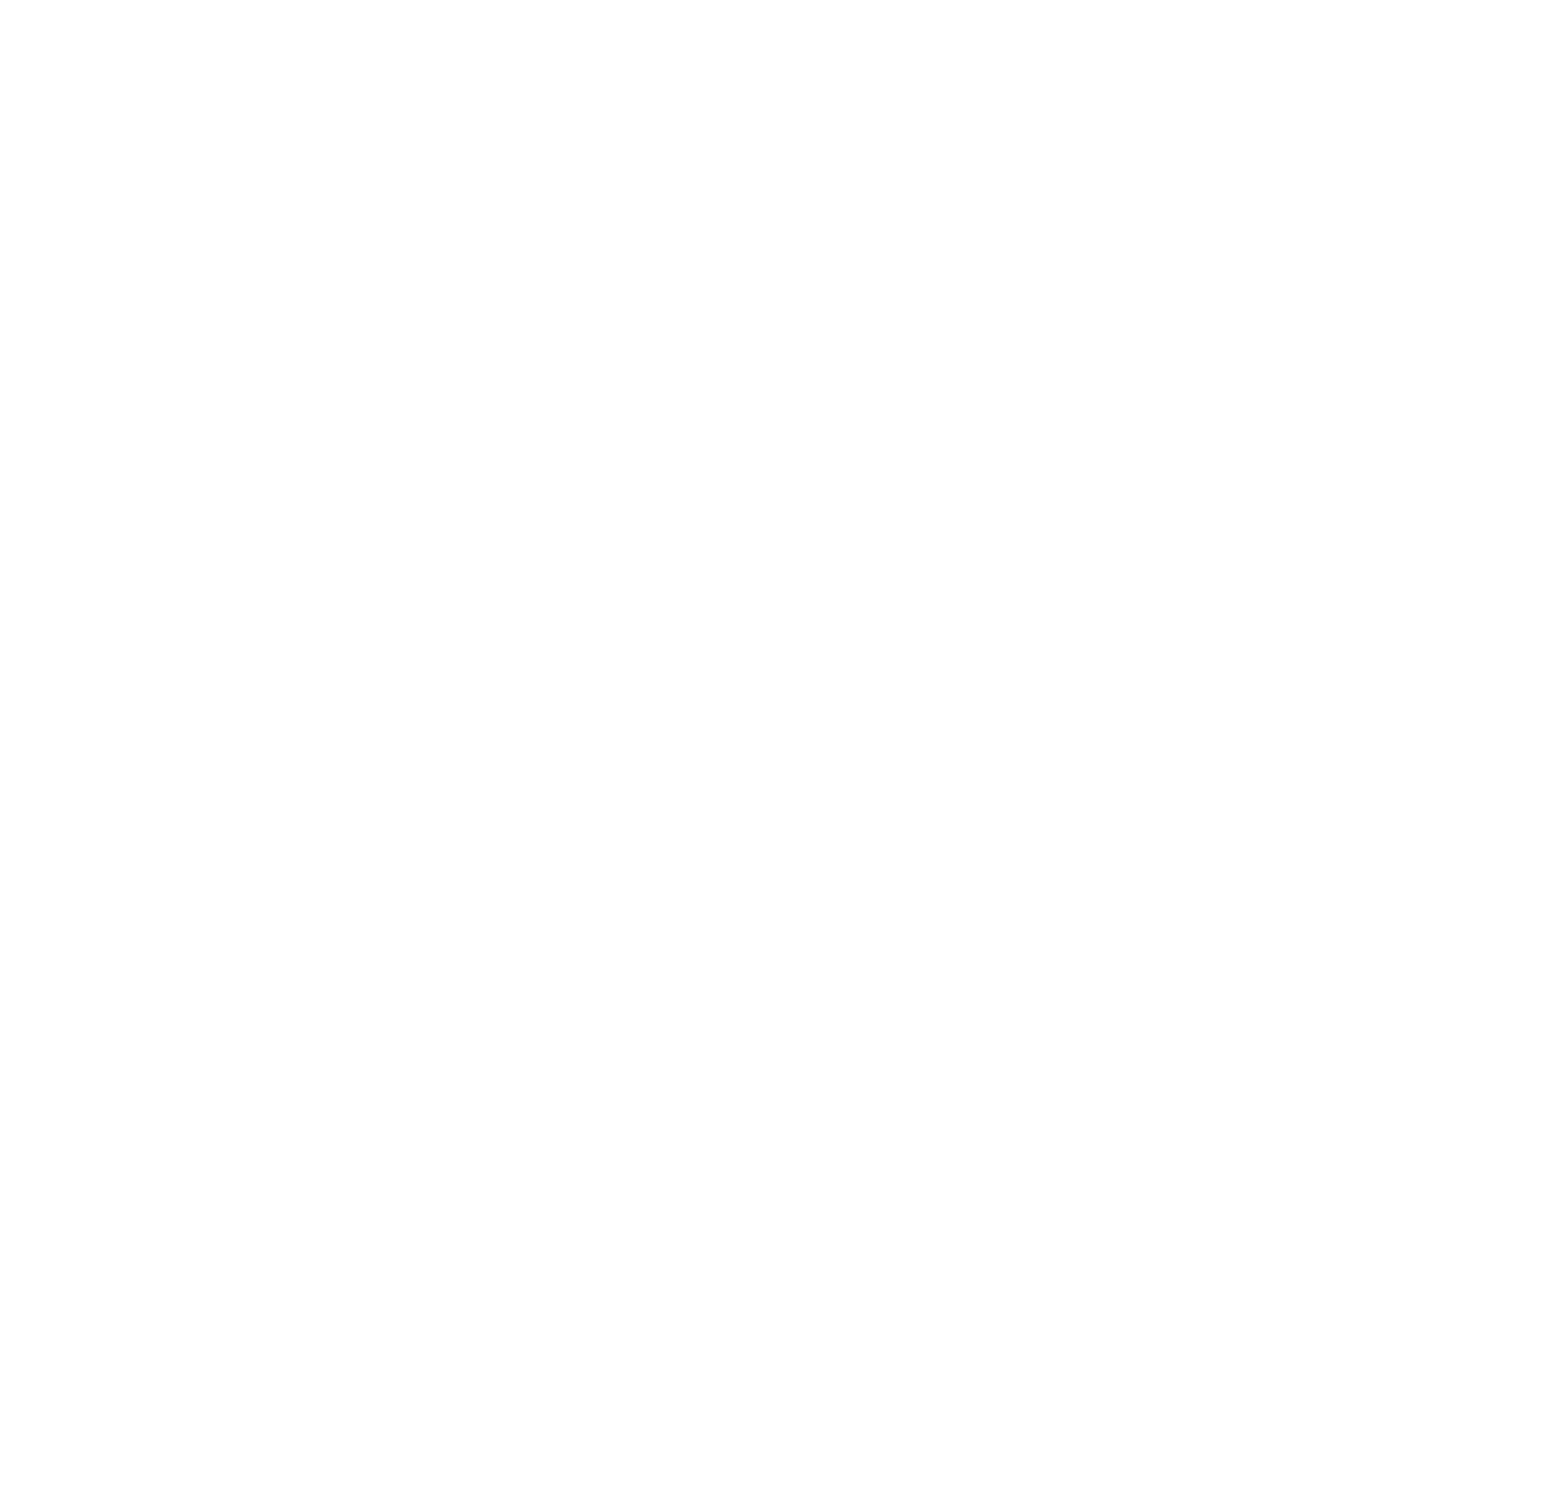 Banco Bradesco logo pour fonds sombres (PNG transparent)